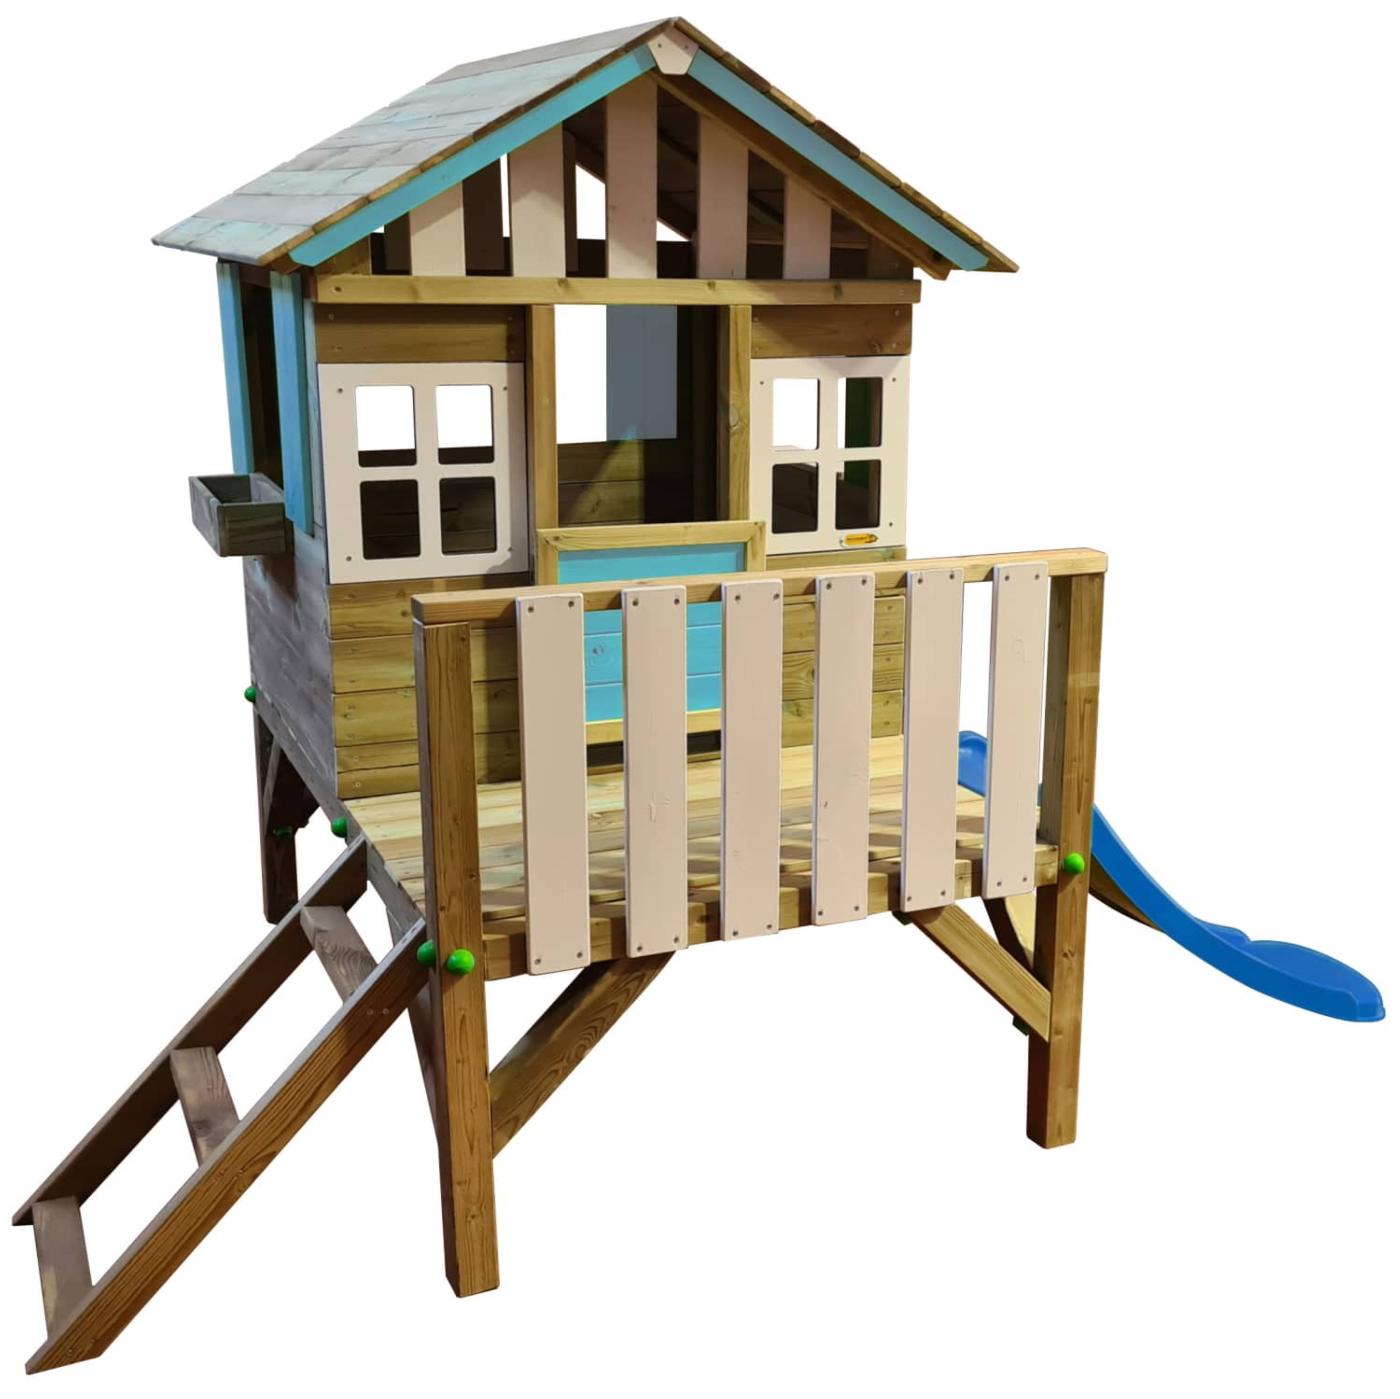 Casa das crianças de madeira elevada com escorrega MASGAMES Lollipop azul